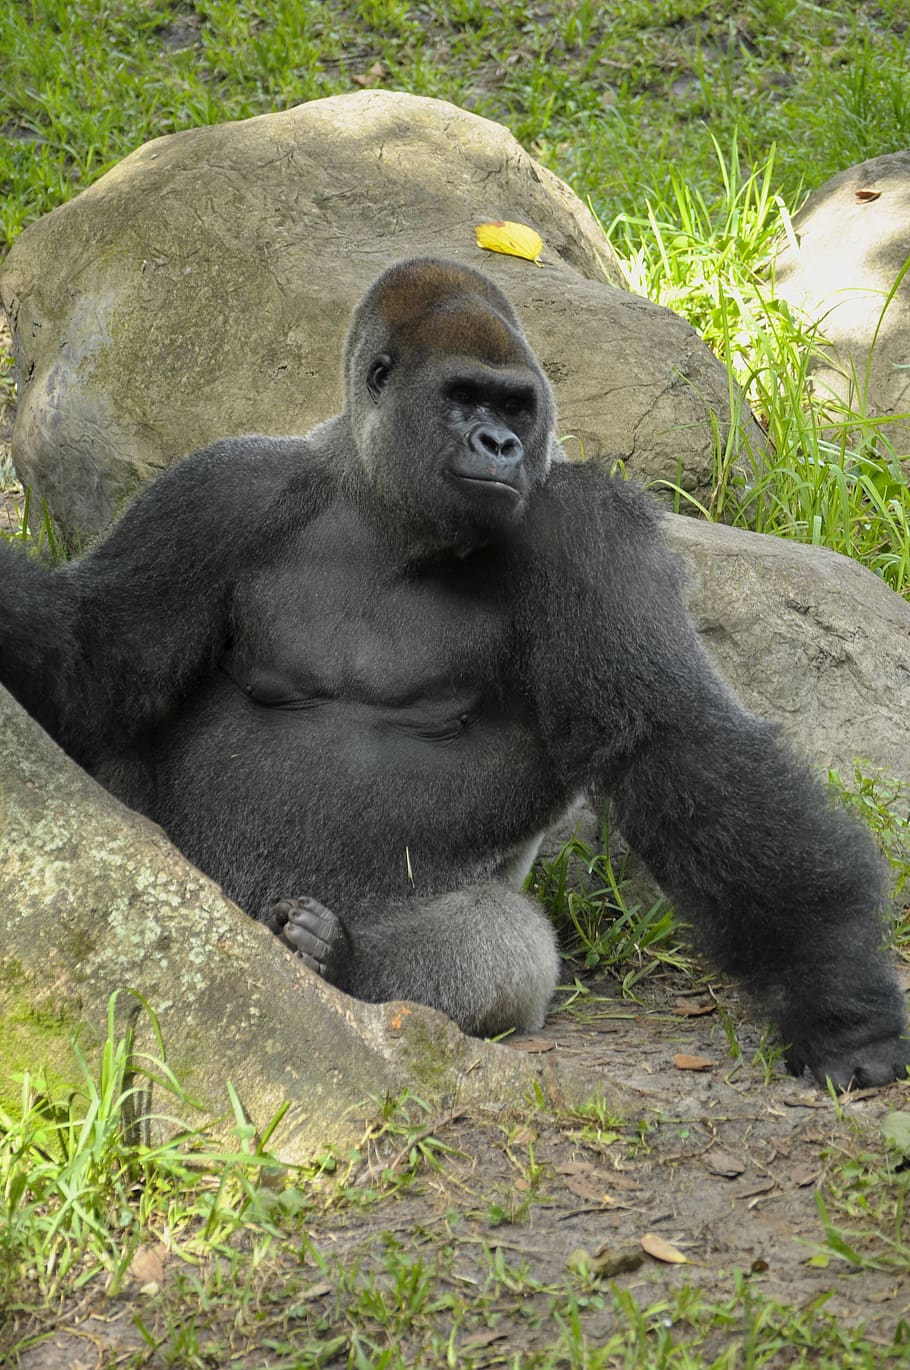 Gorilla trekking safety tips